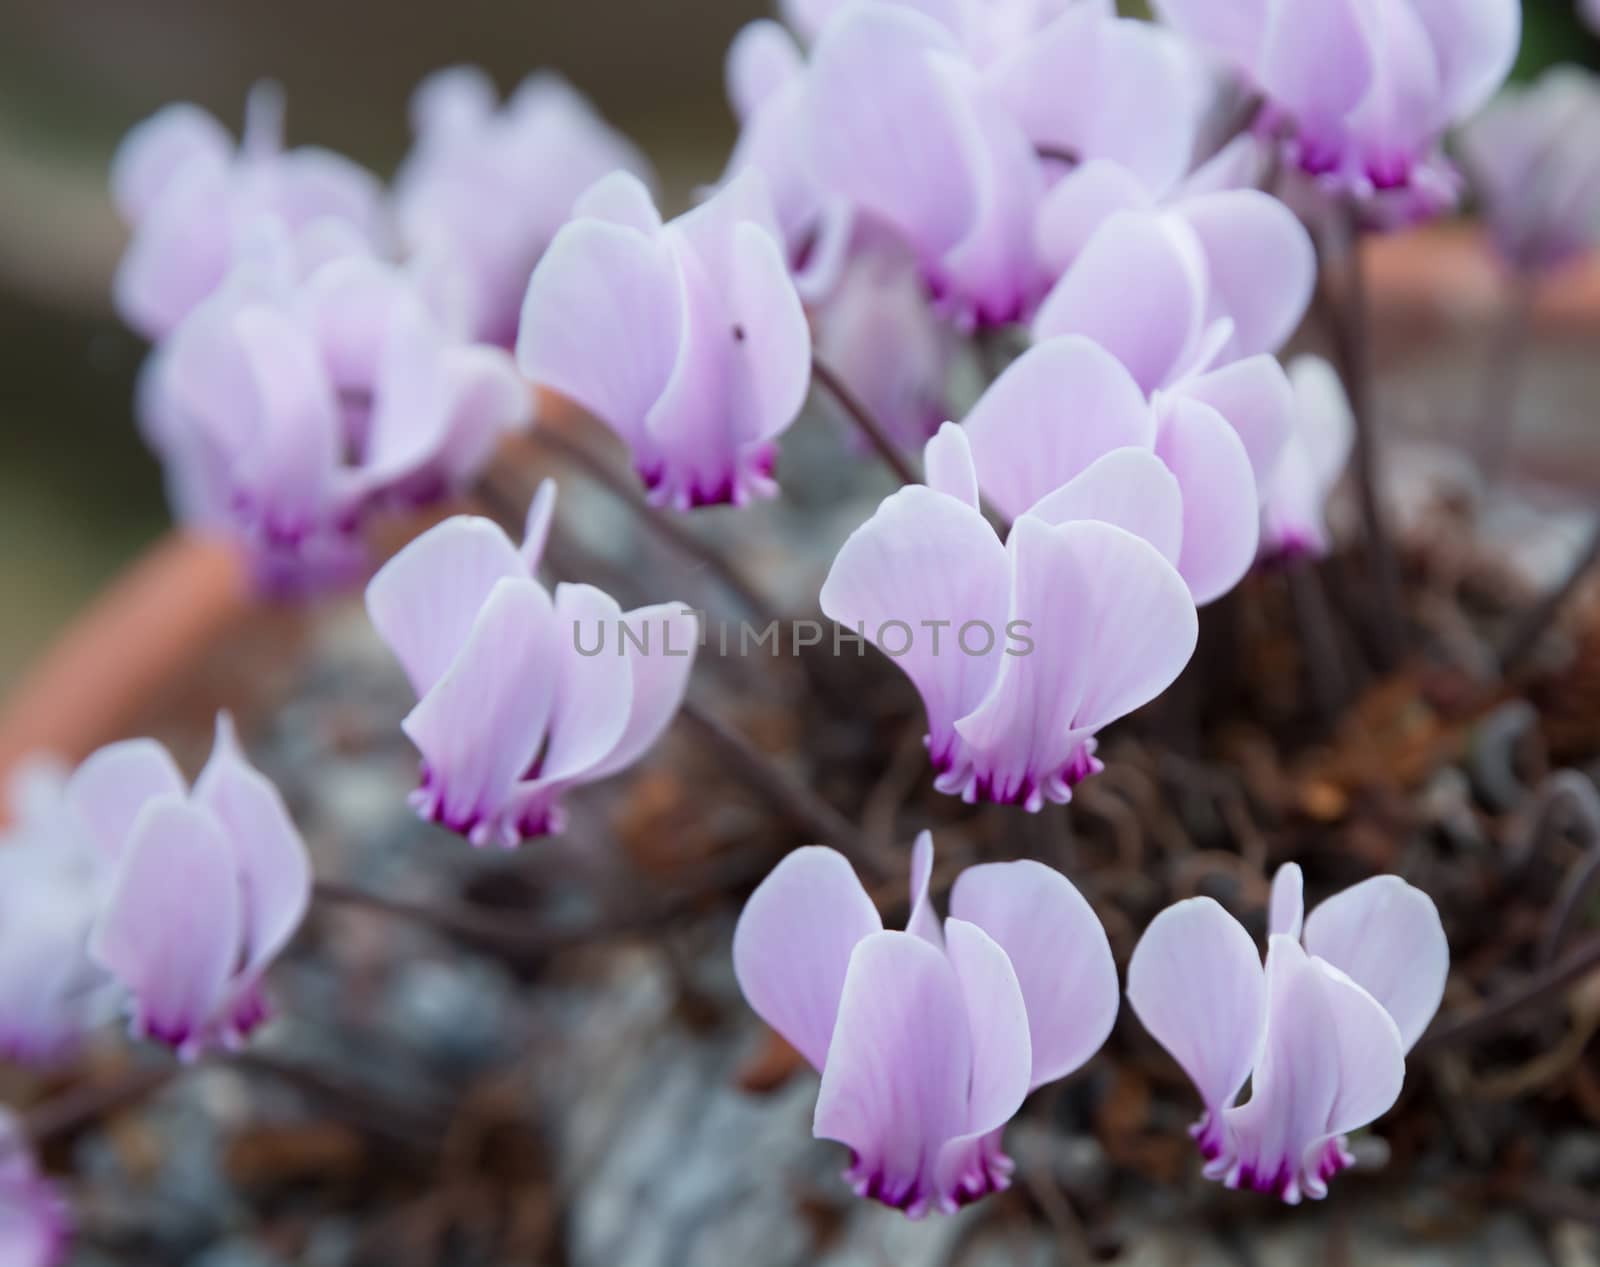 Cyclamen with plenty of little purple flowers in a pot.